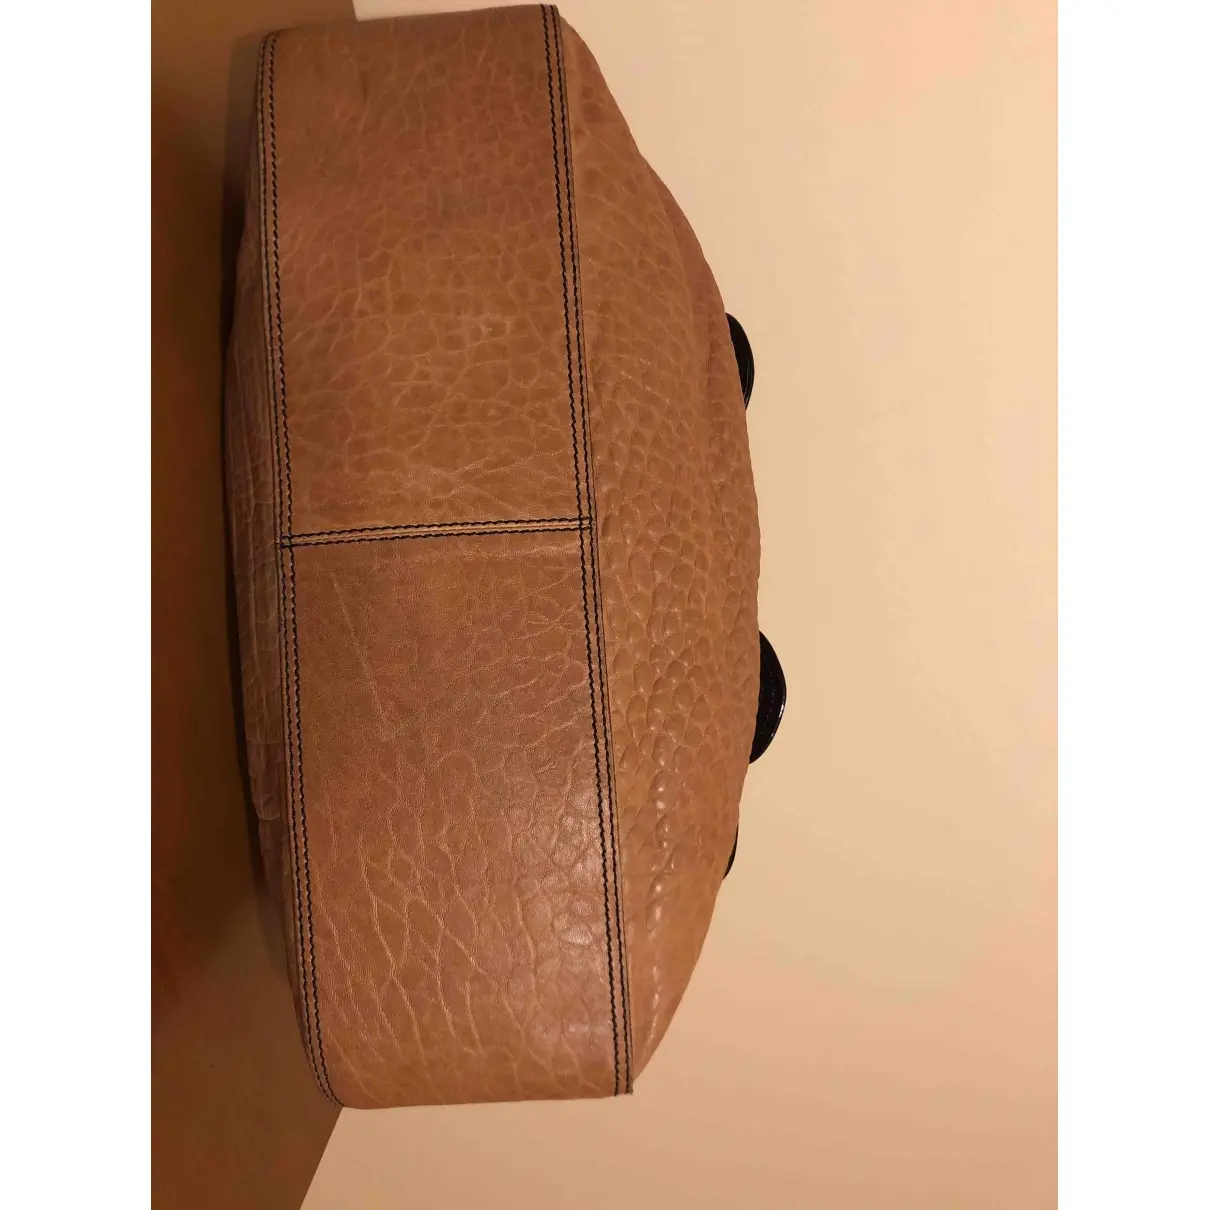 Fendi Bag leather handbag for sale - Vintage